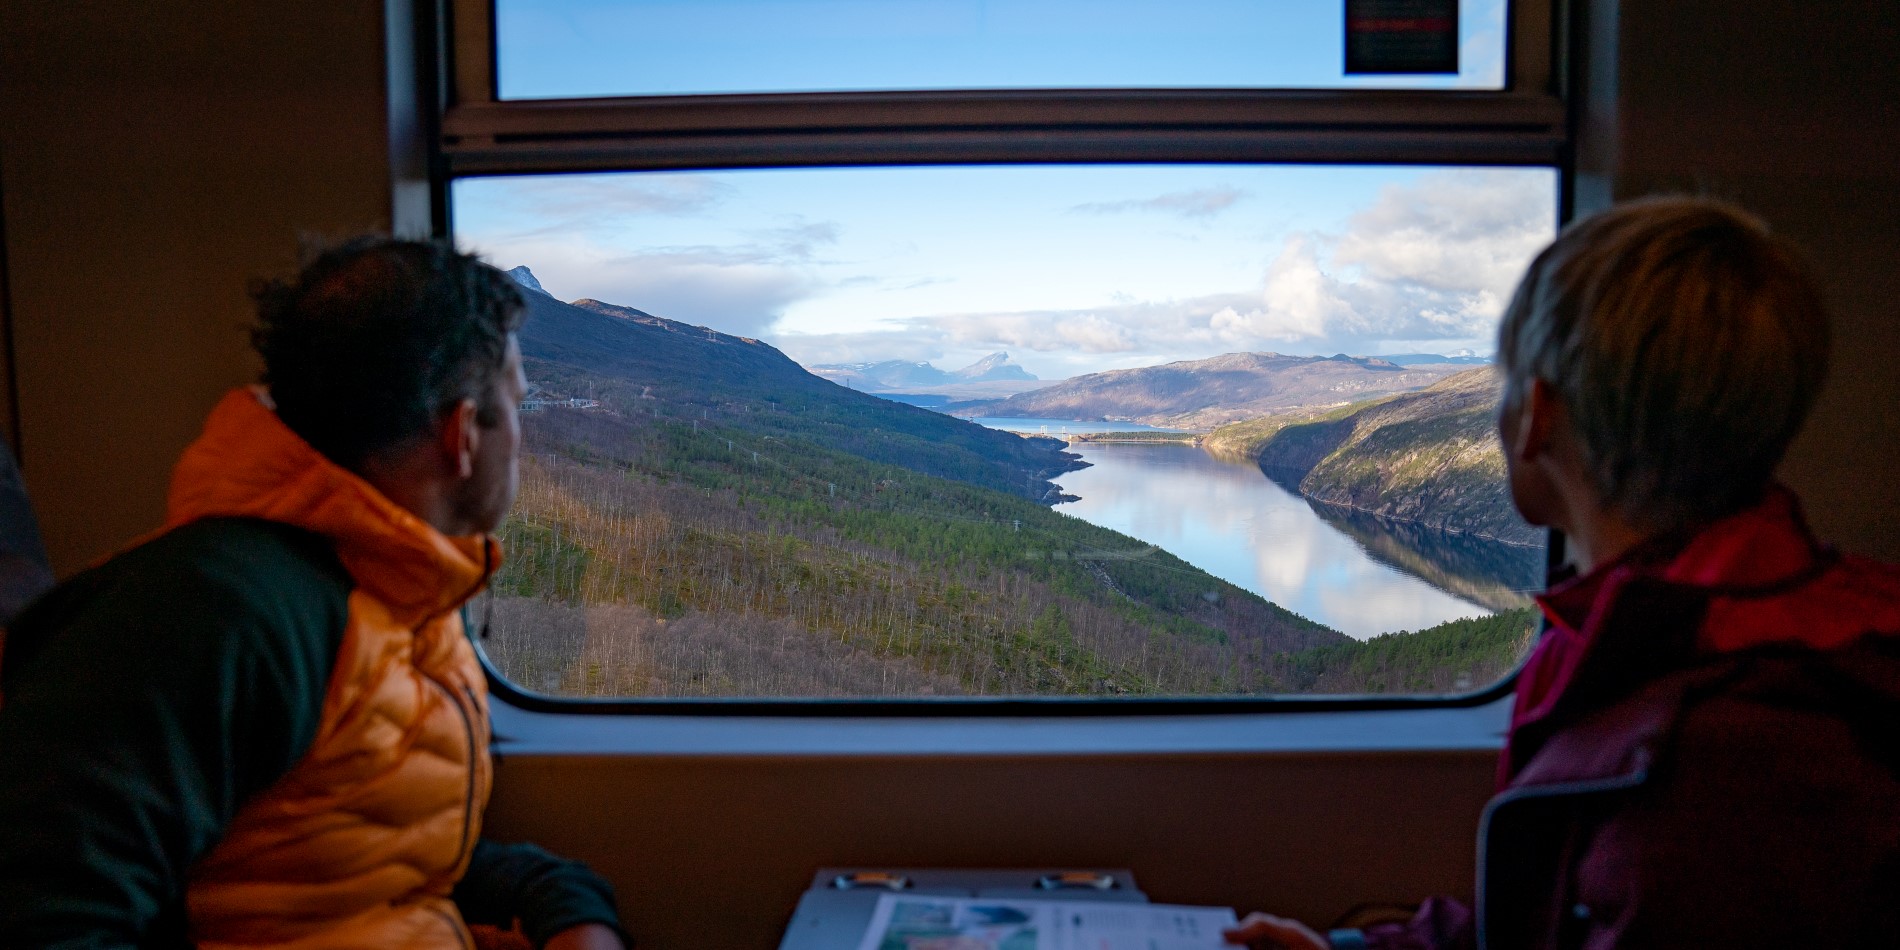 Un couple admirant la vue sur un lac depuis la fenêtre du train arctique